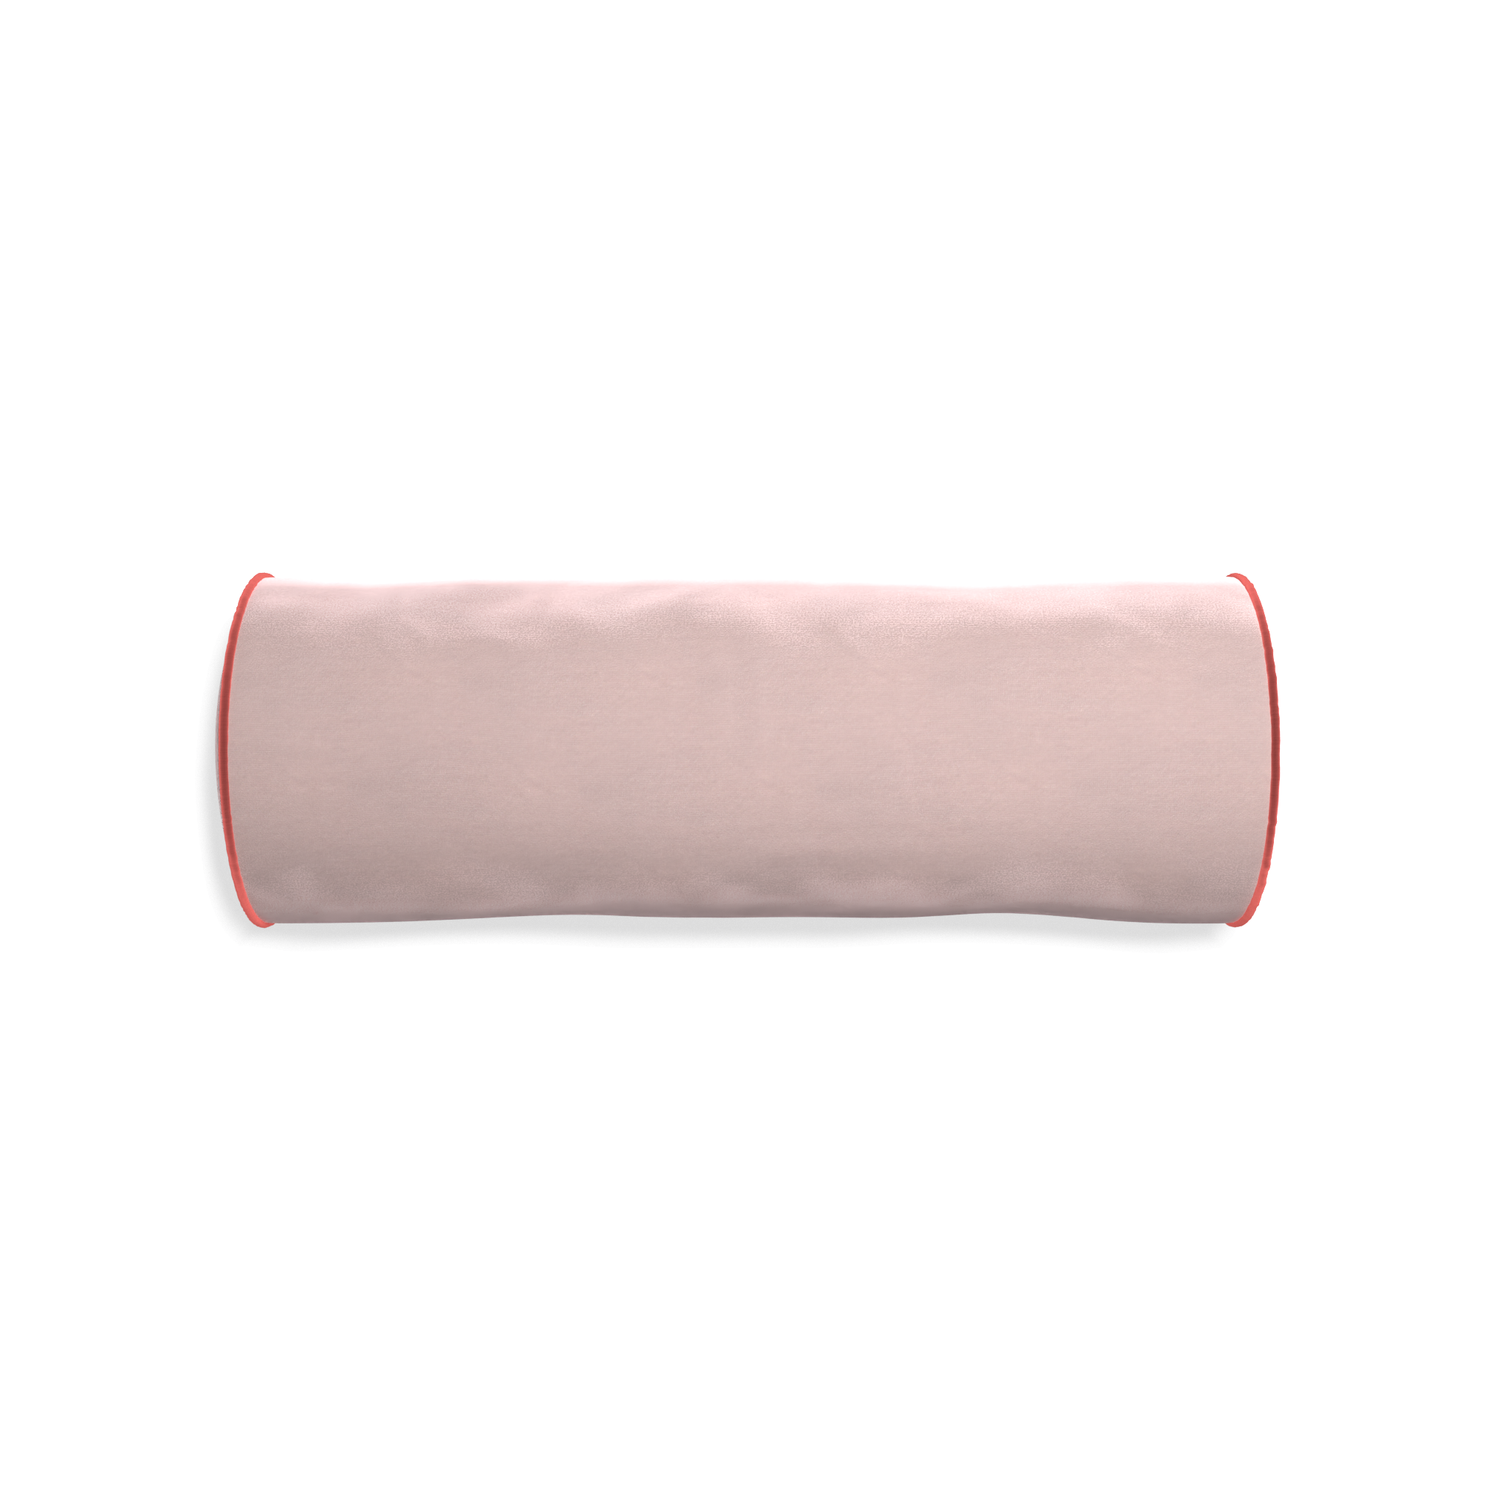 Bolster rose velvet custom pillow with c piping on white background